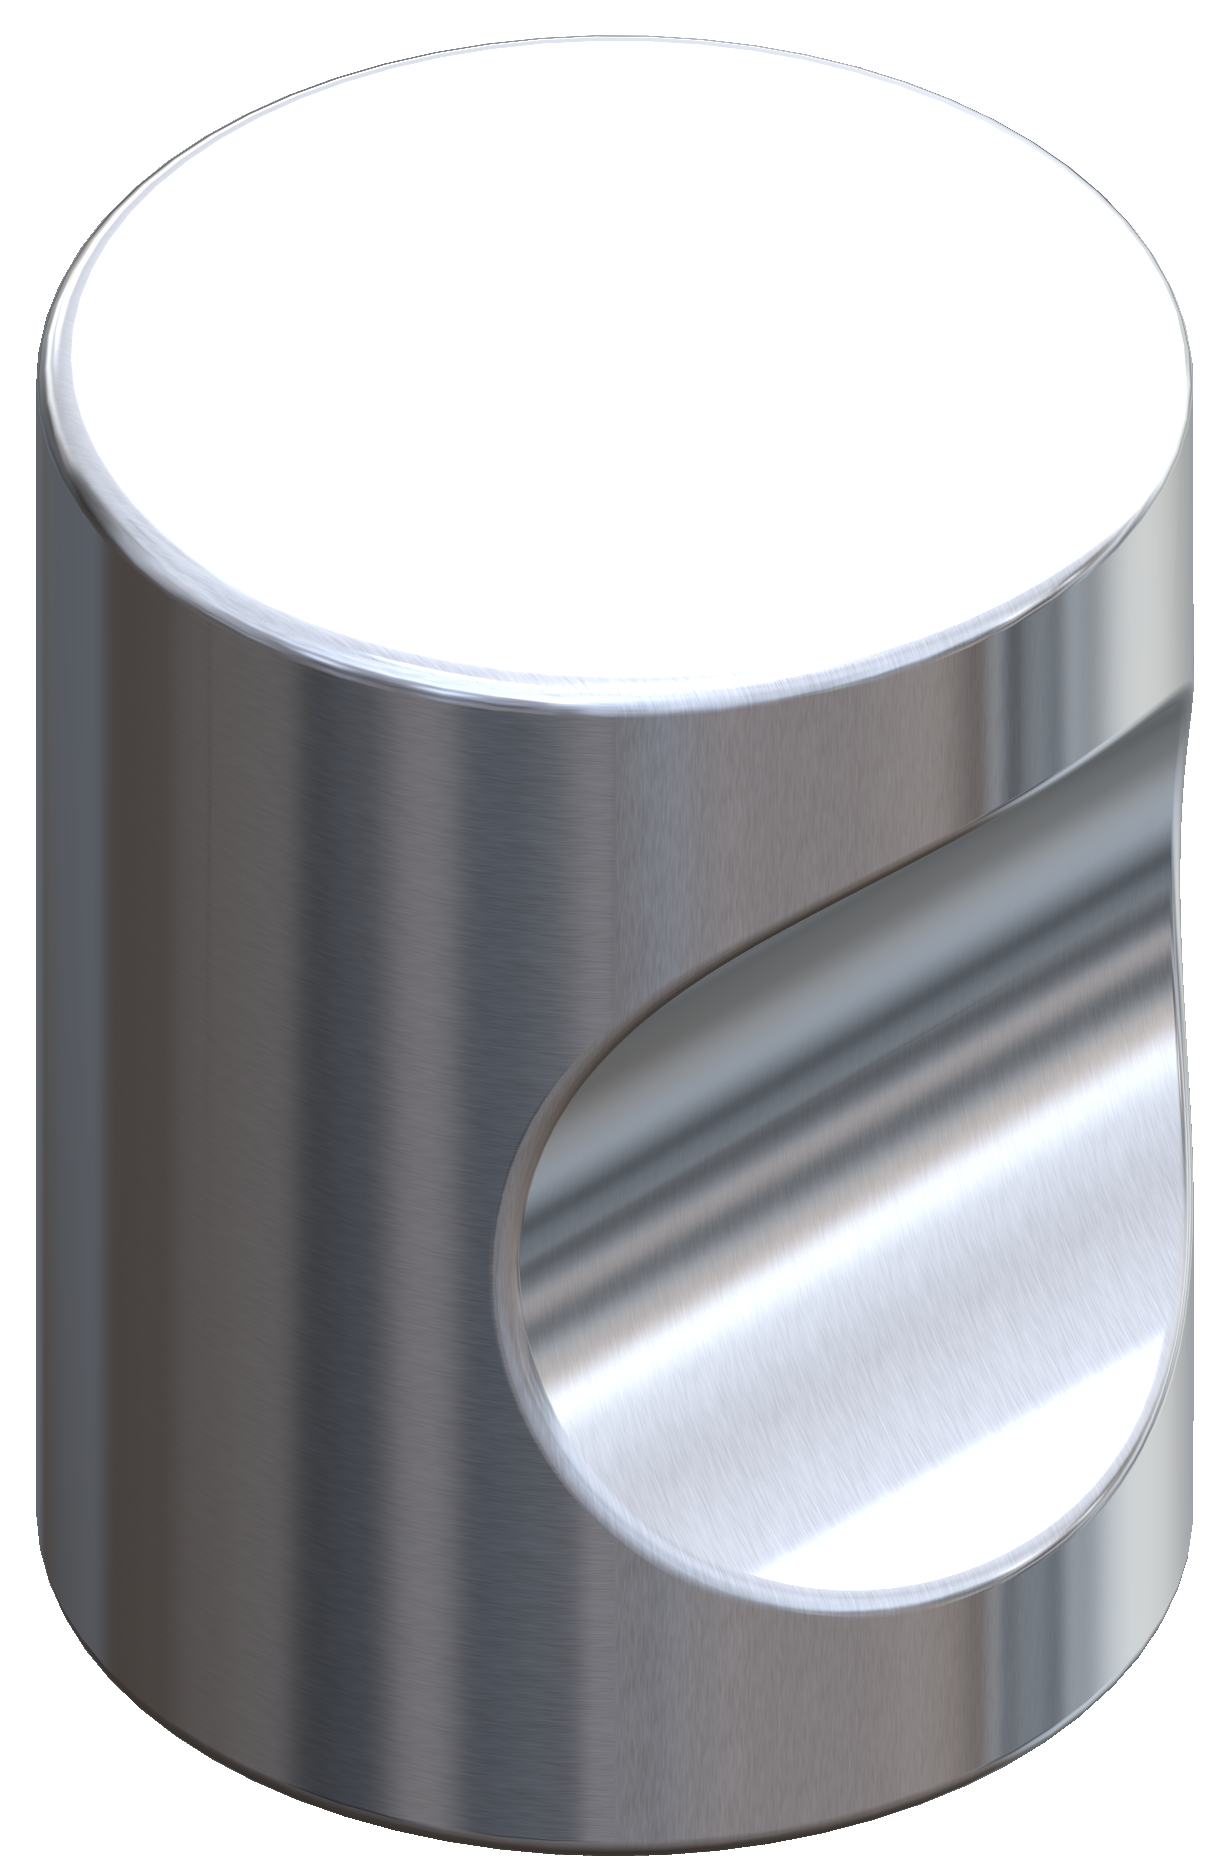 Flush handle_Aluminum